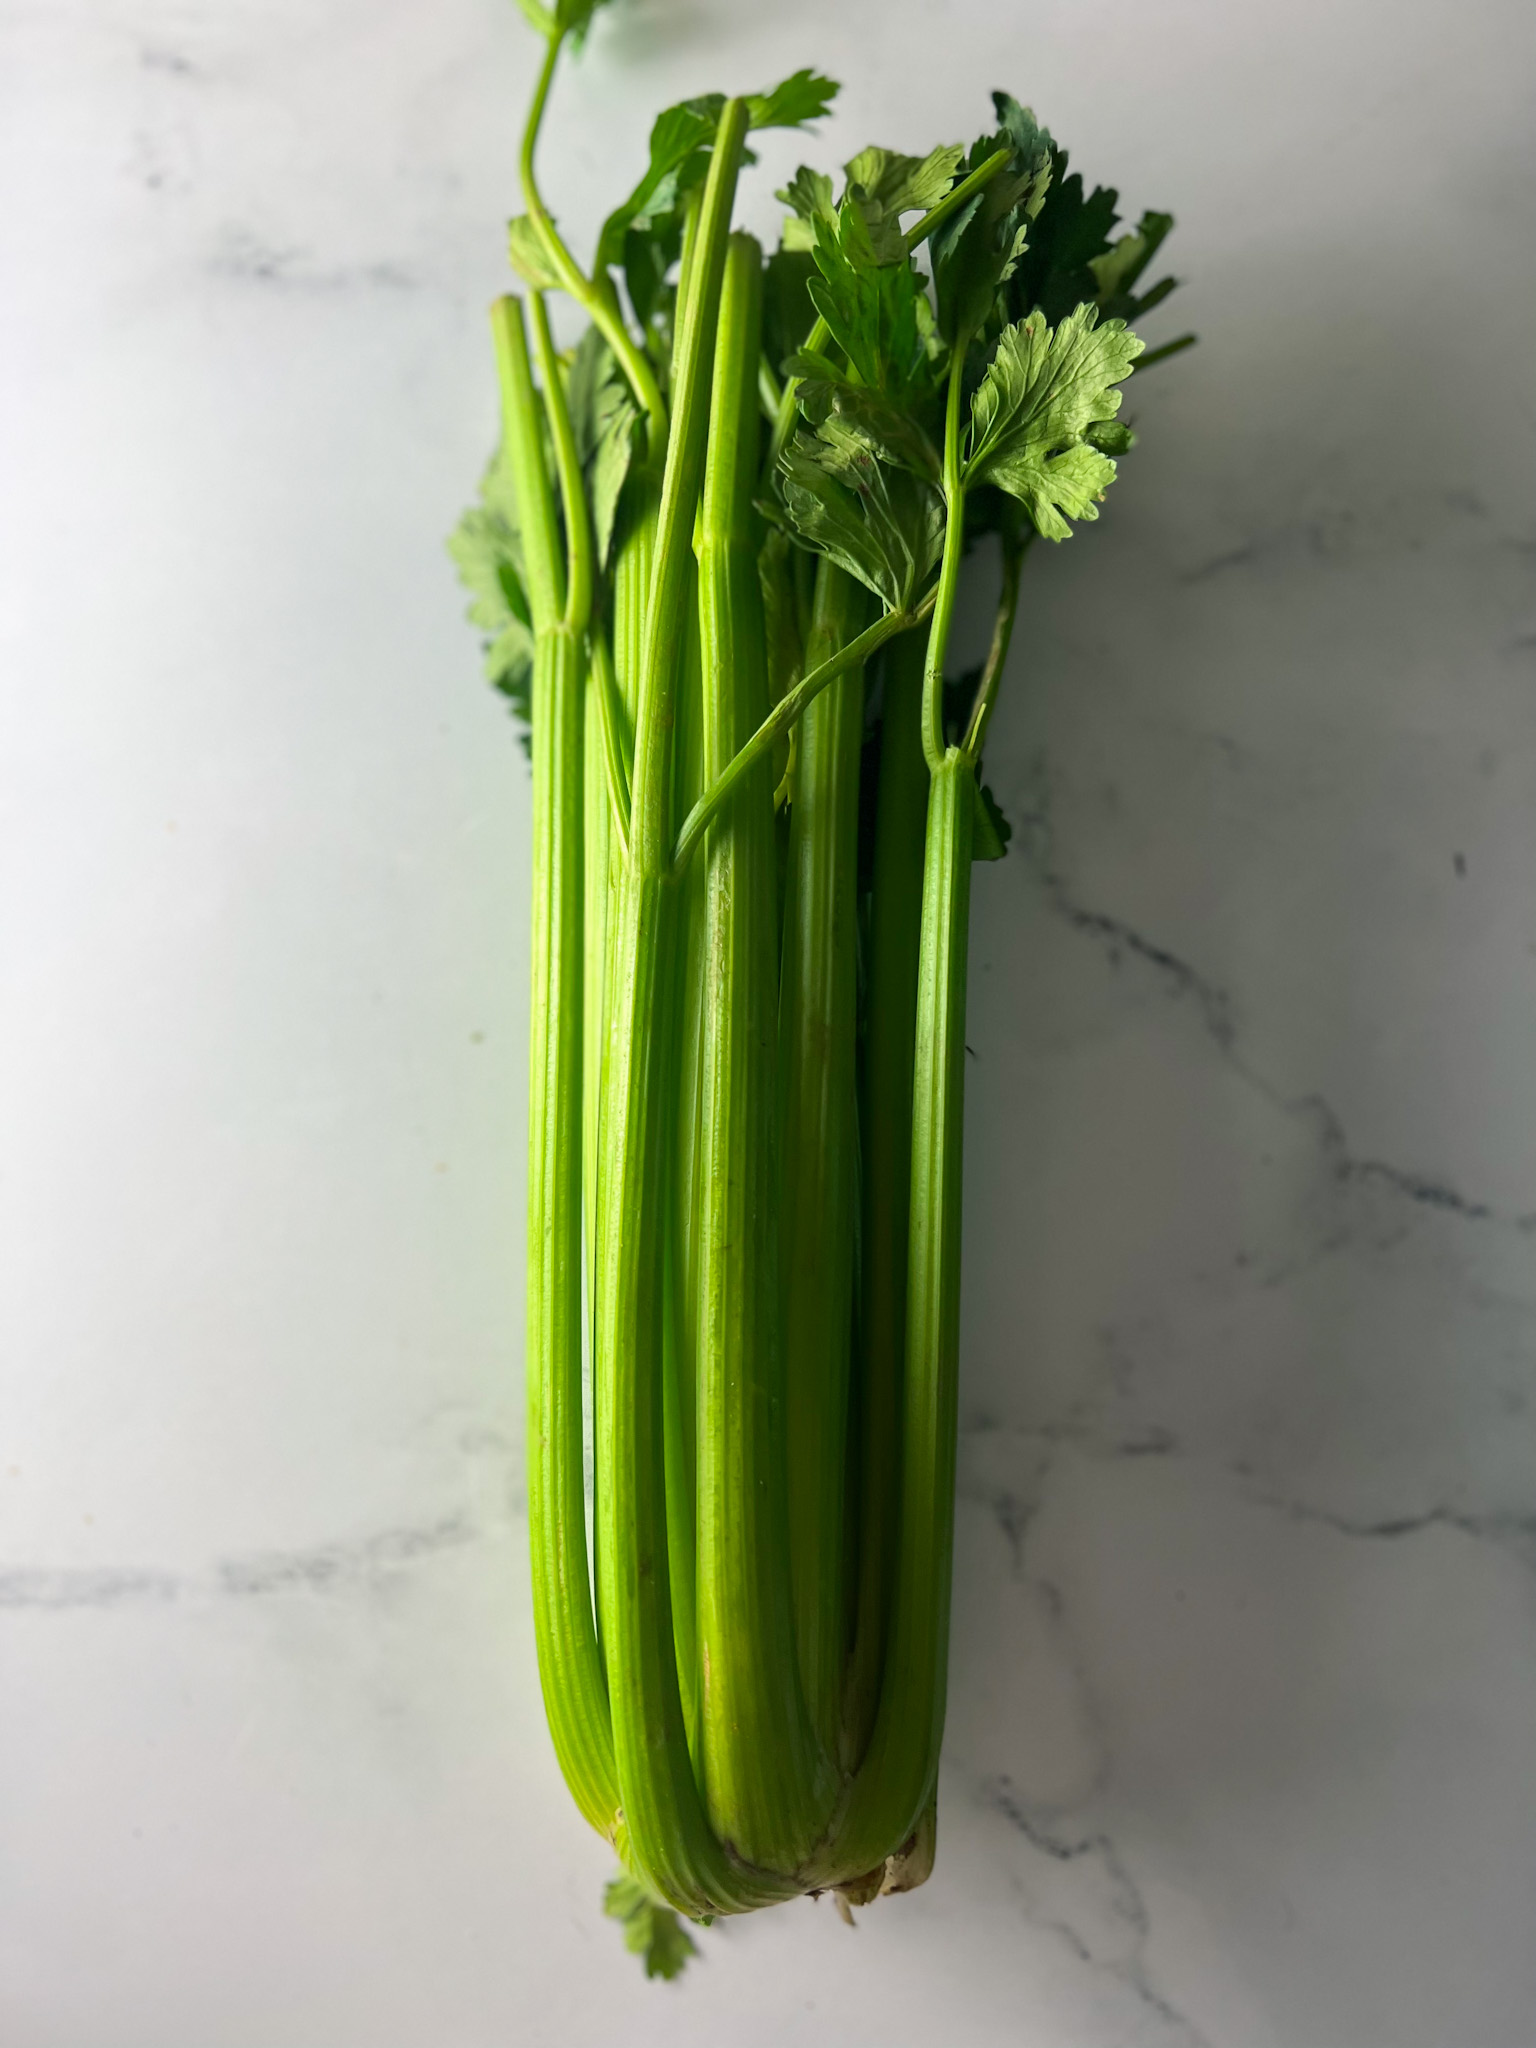 whole celery